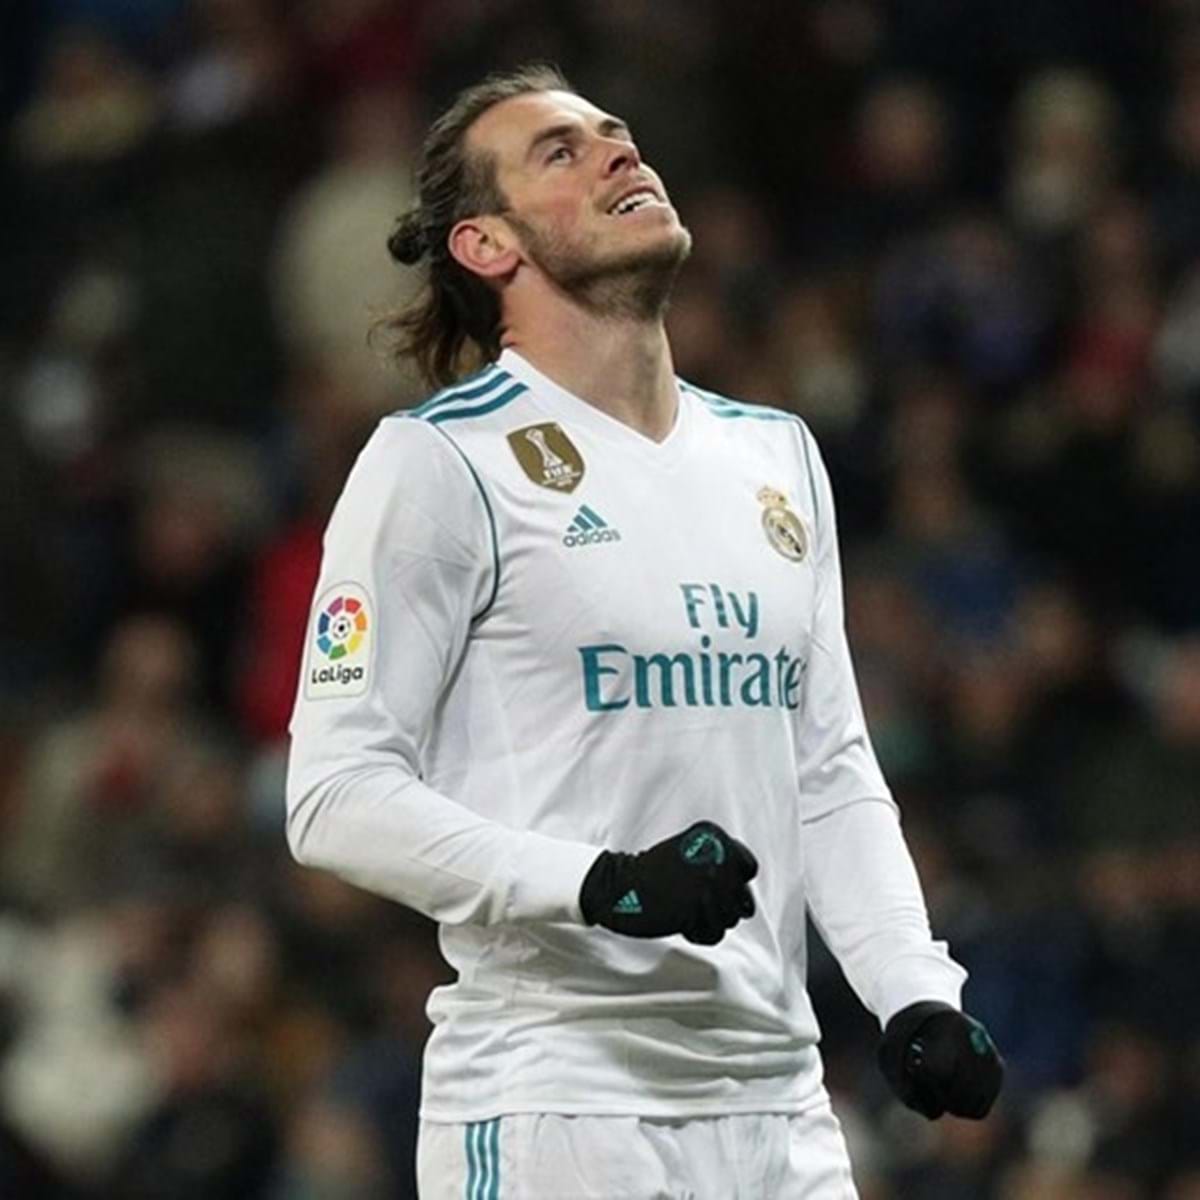 Jornal revela maiores salários das ligas europeias; Bale lidera na